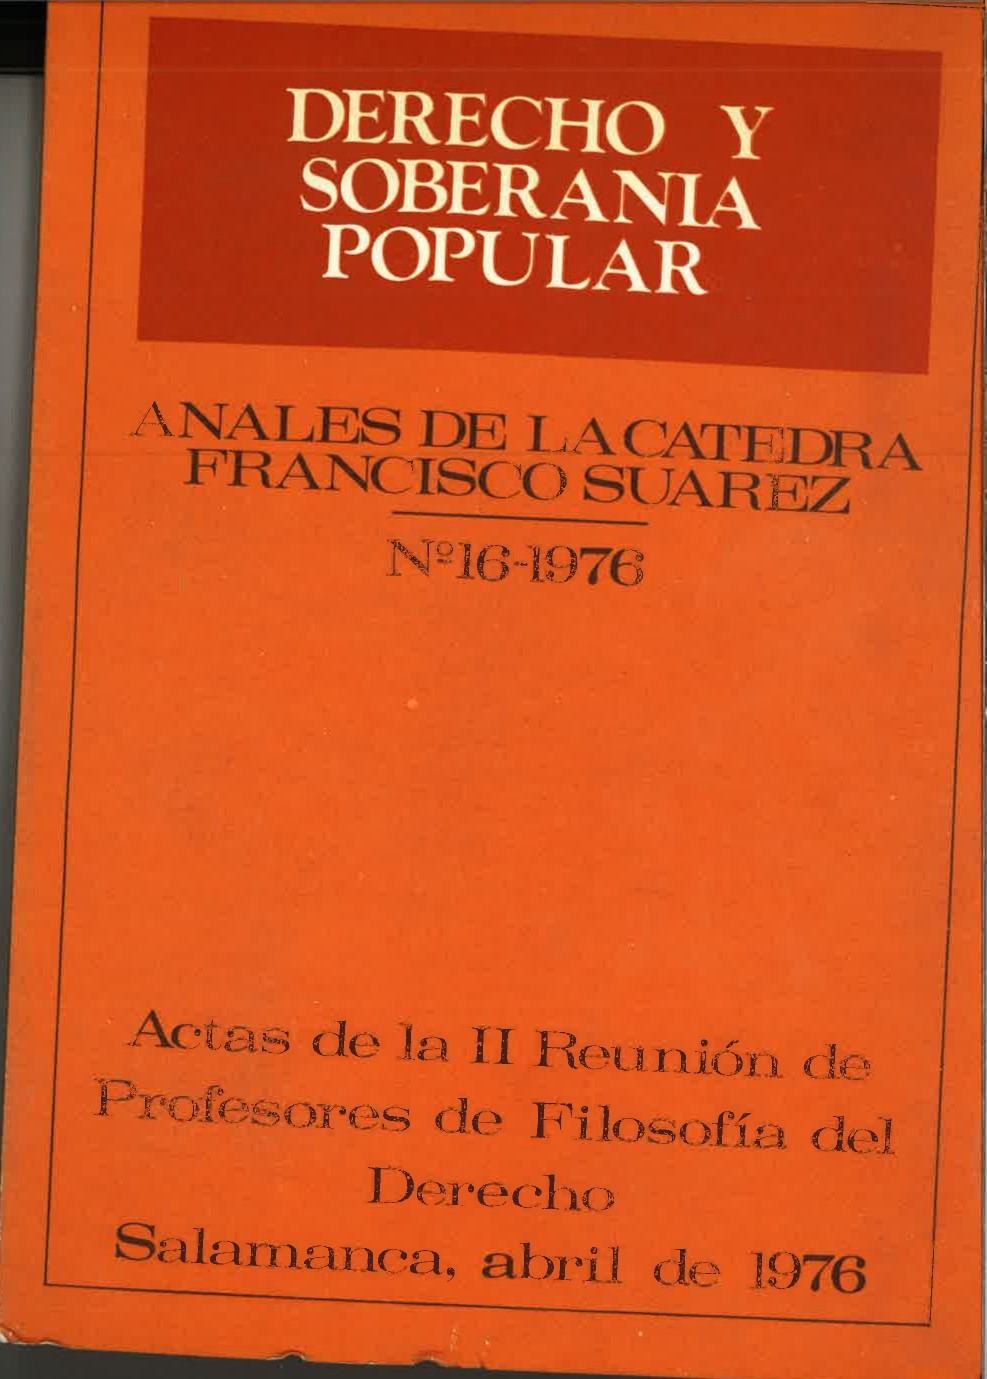 					View Vol. 16 (1976): Derecho y soberanía popular
				